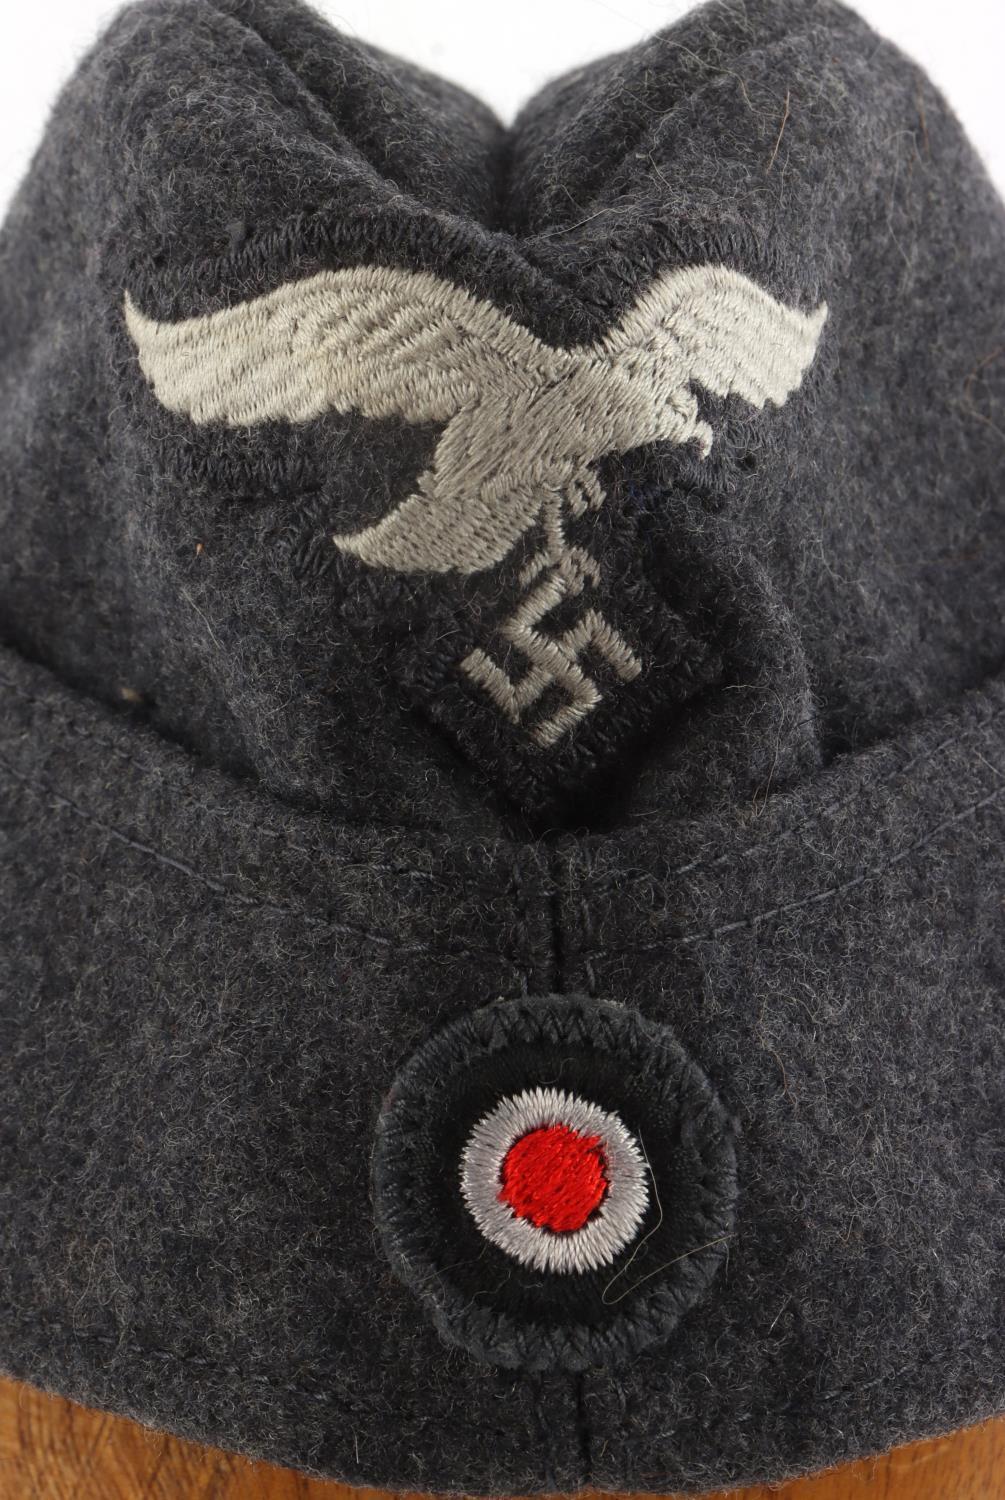 WWII GERMAN THIRD REICH LUFTWAFFE OVERSEAS CAP